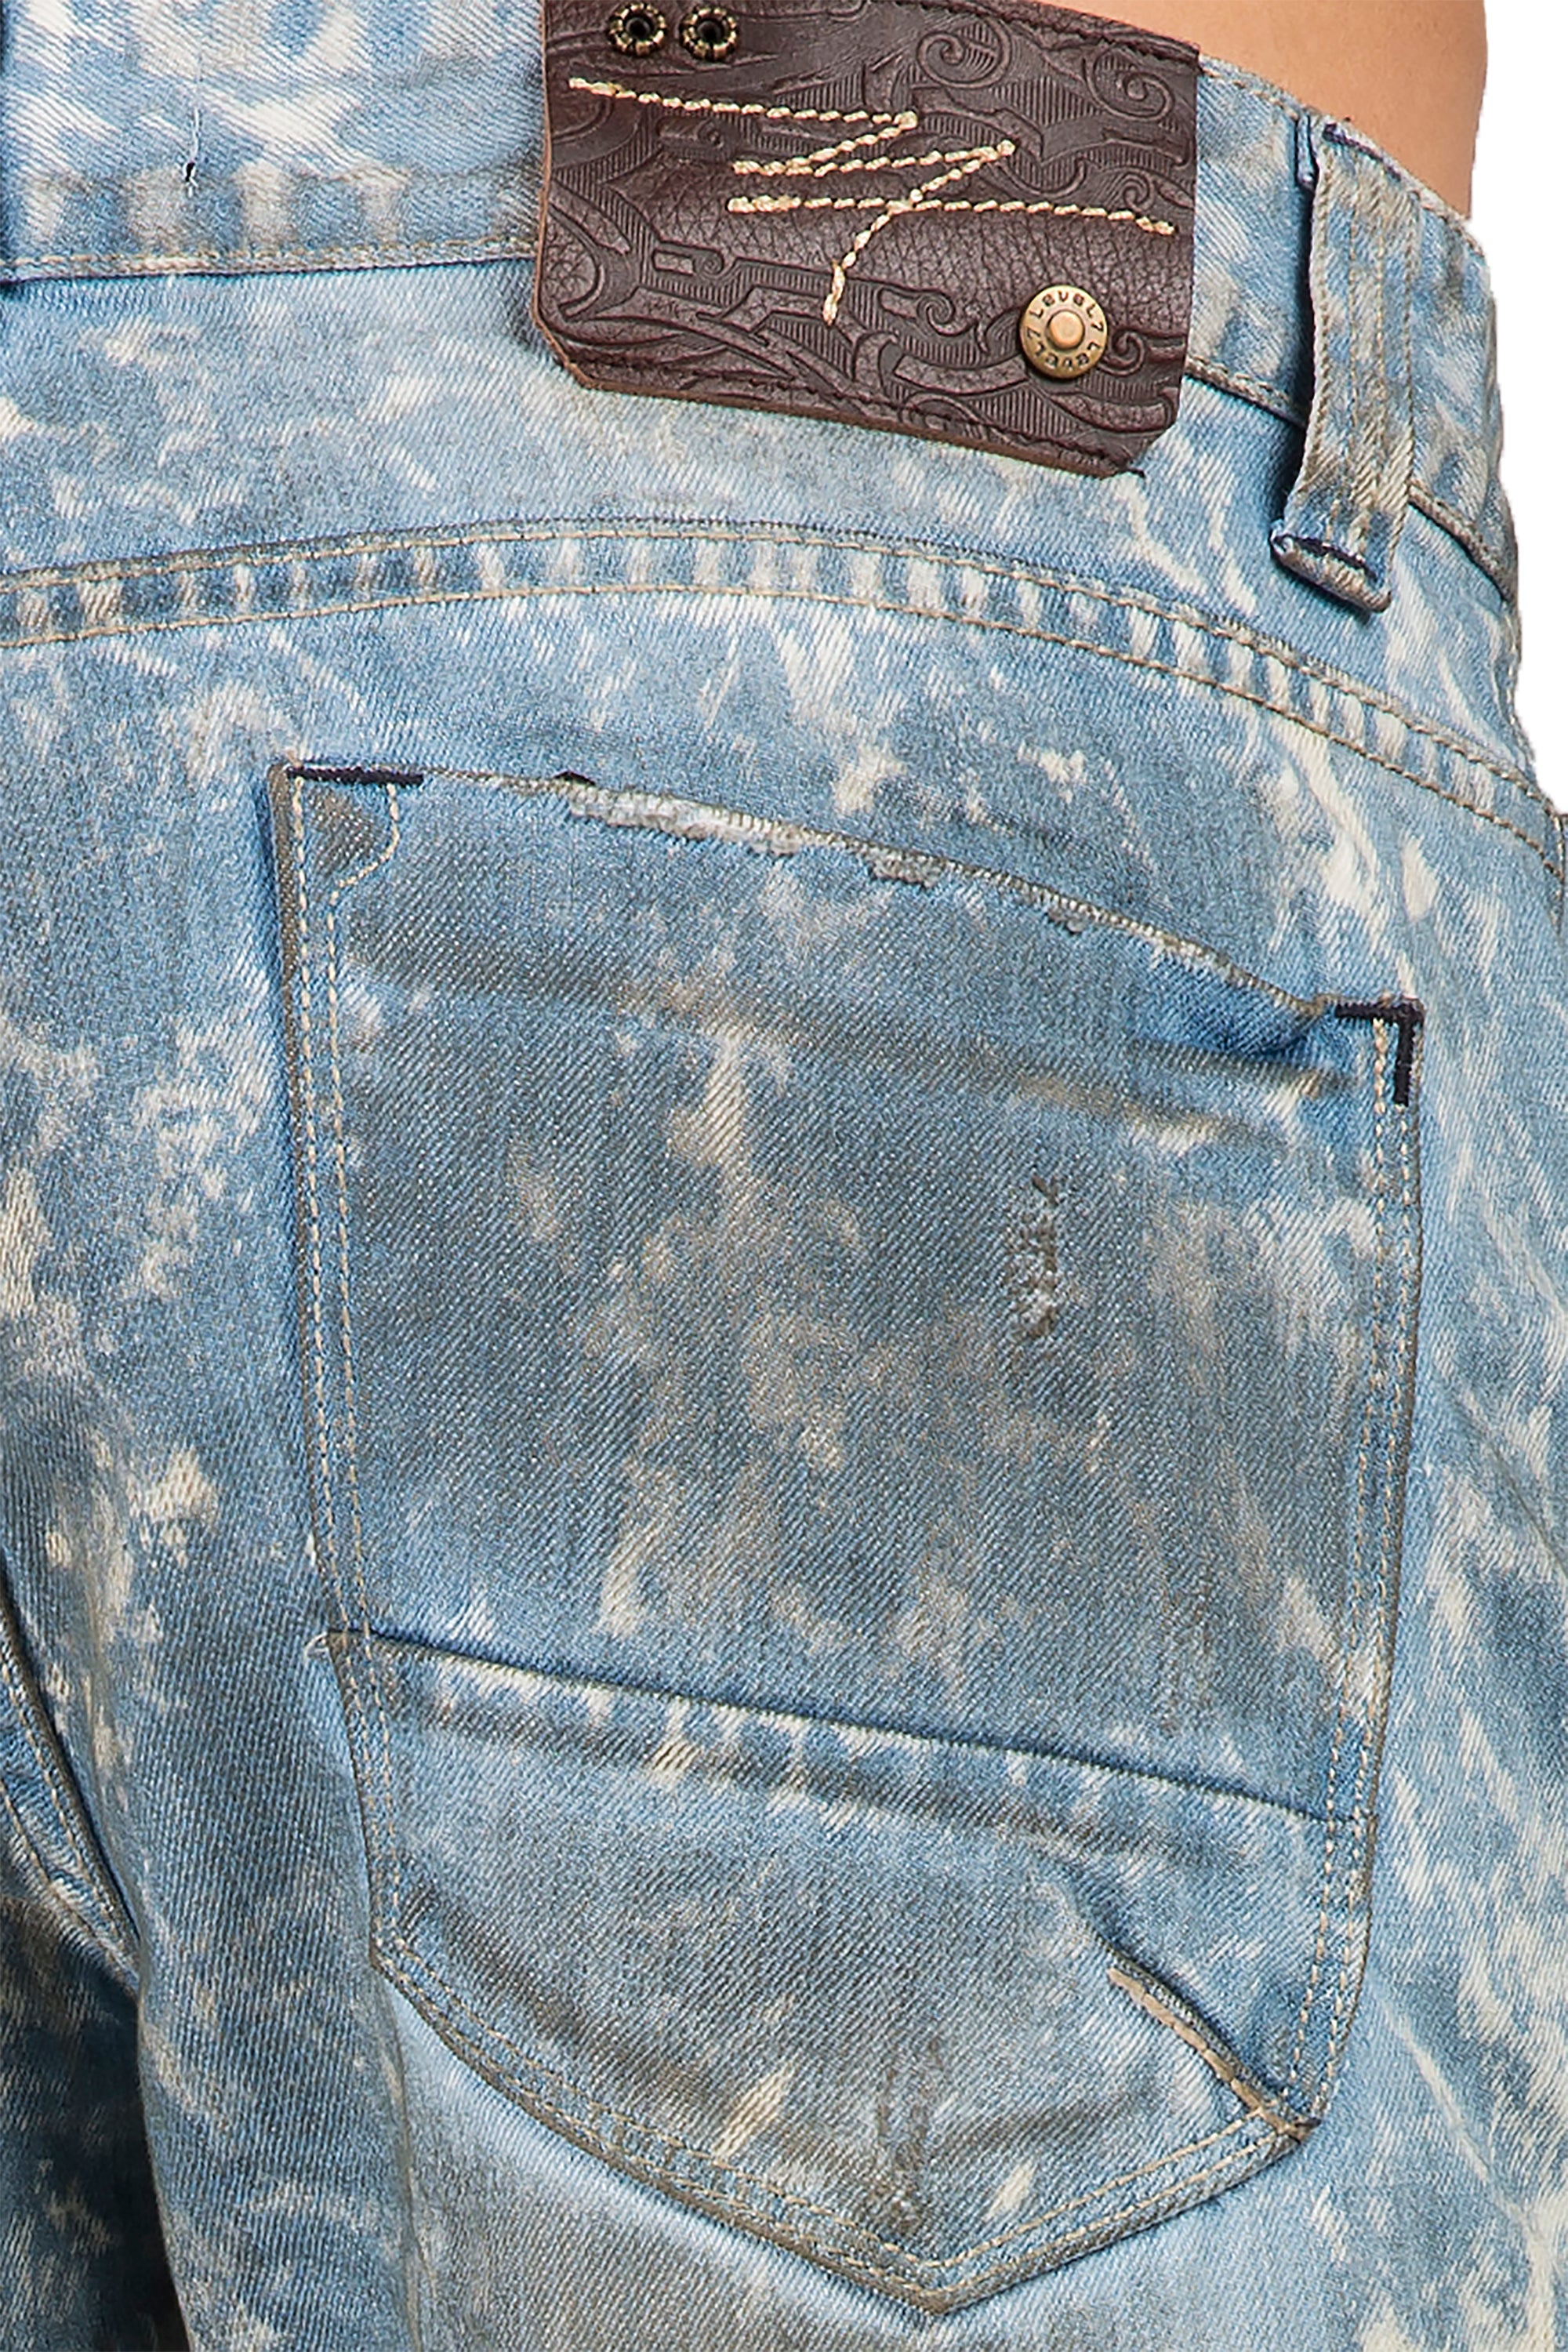 Level 7 Men's Slim Straight Light Paint Splatter Wash 5 Pocket jeans  Premium Denim – Level 7 Jeans